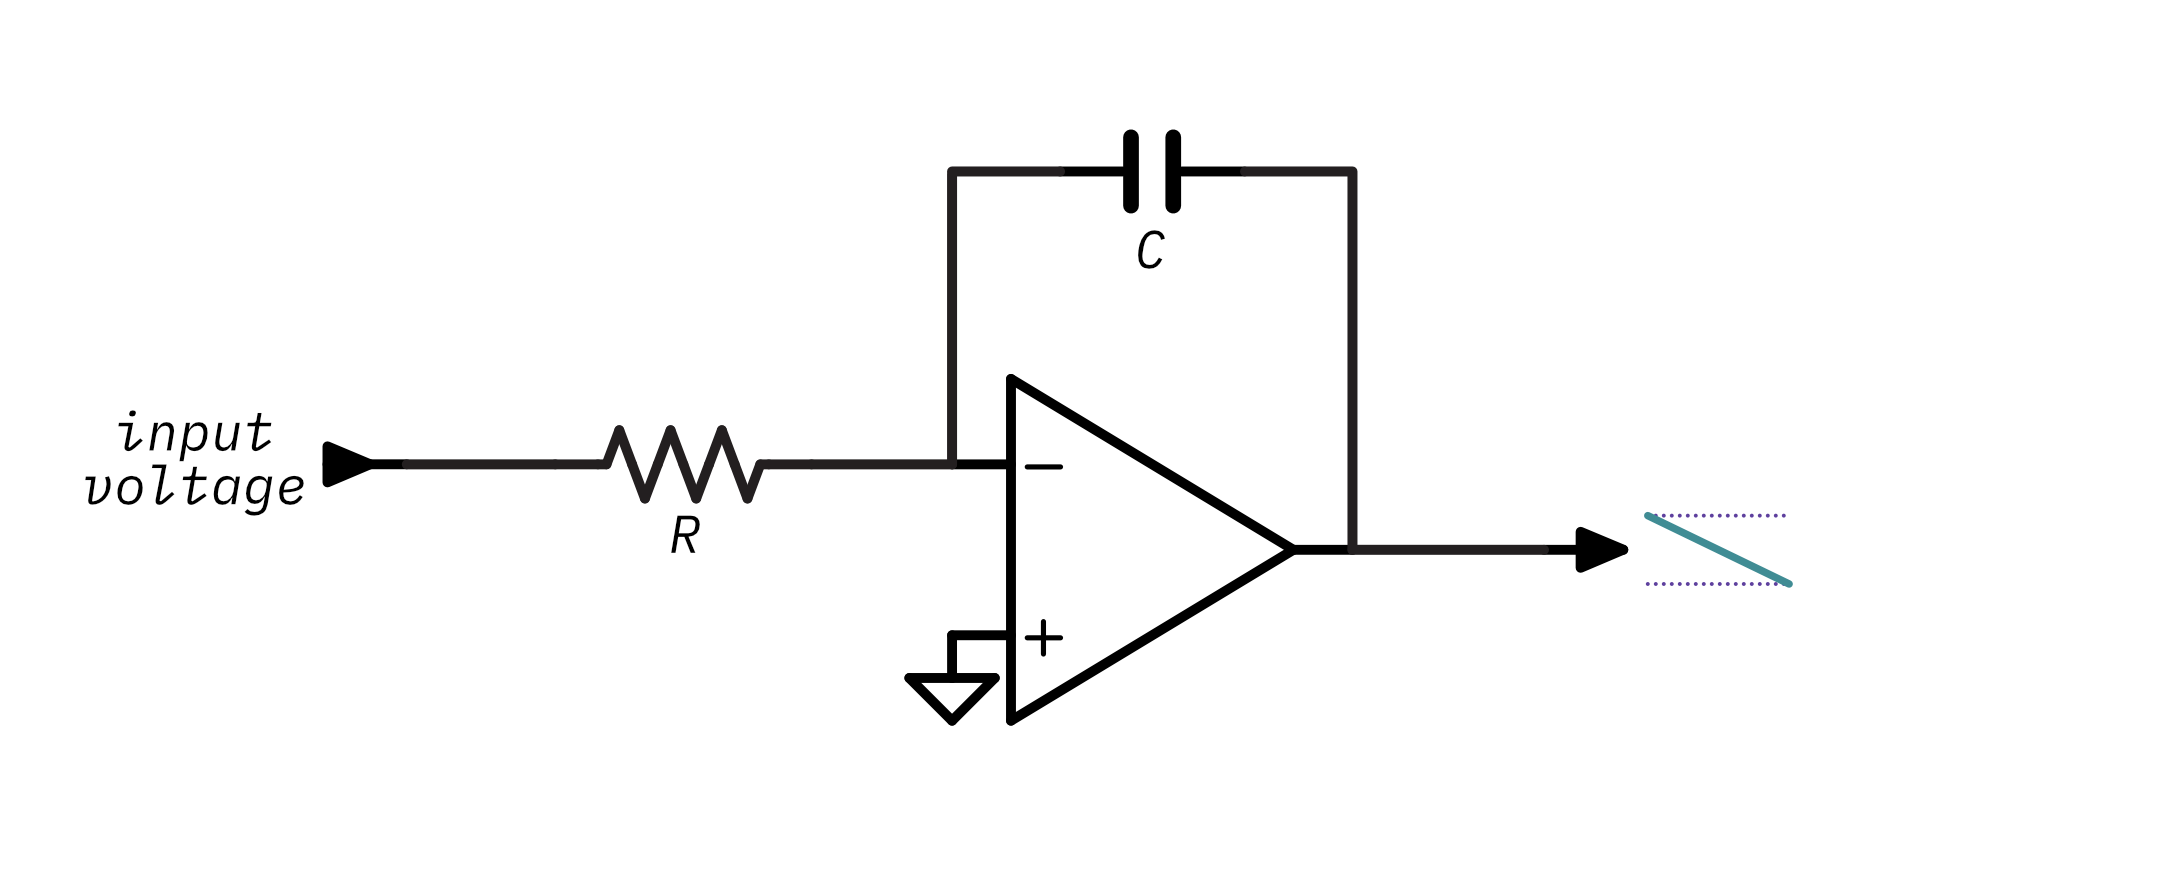 A basic op-amp integrator circuit